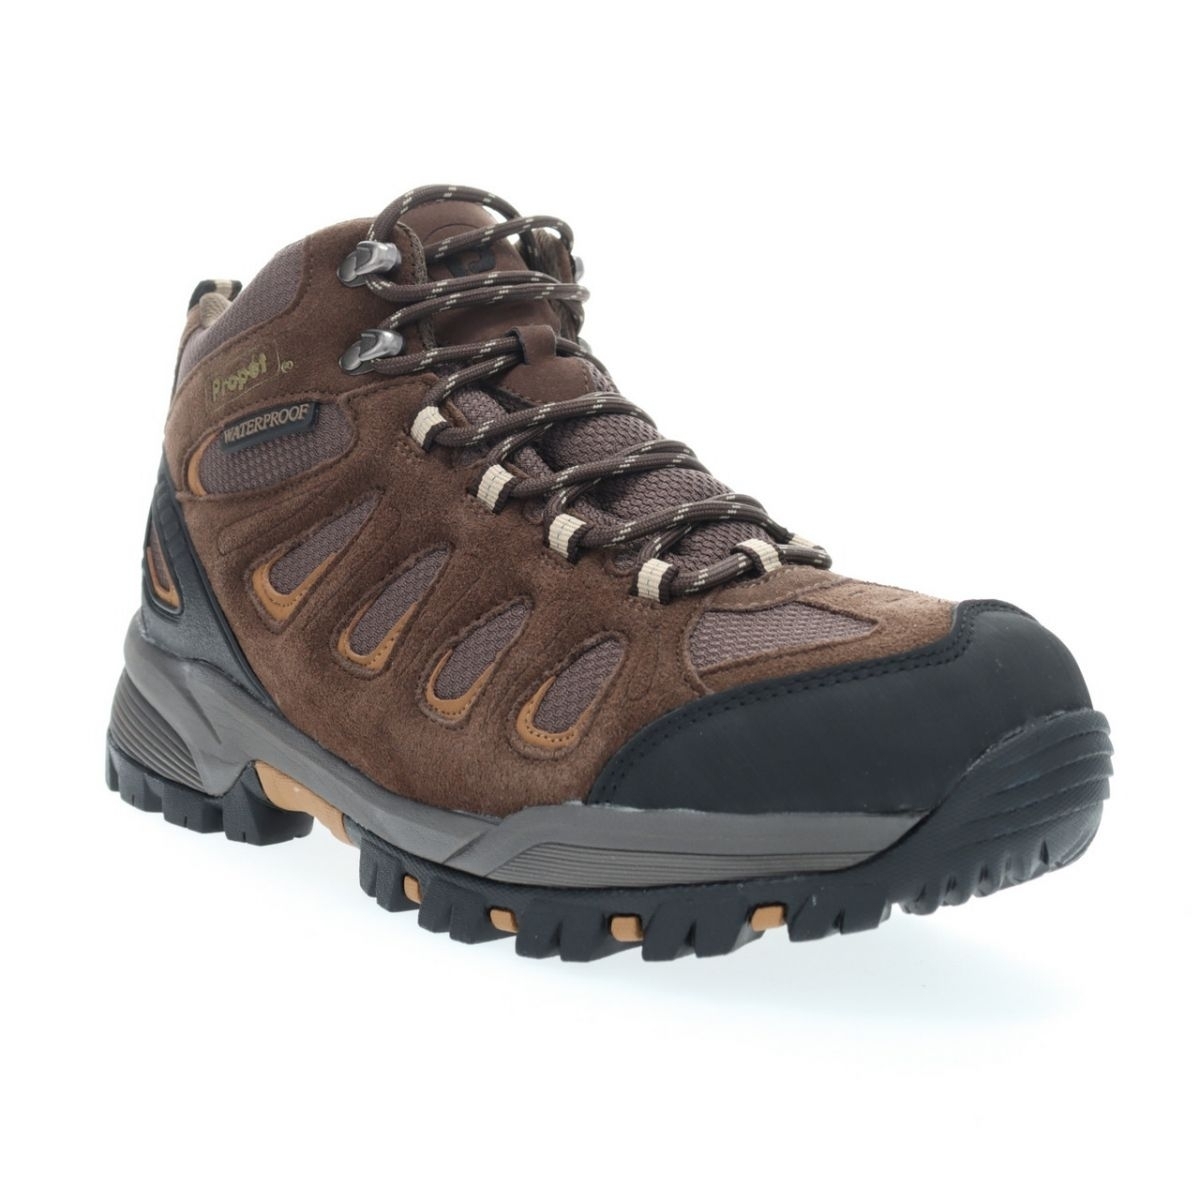 Propet Men's Ridge Walker Hiking Boot Brown - M3599BR 8 XX US Men BROWN - BROWN, 13 X-Wide